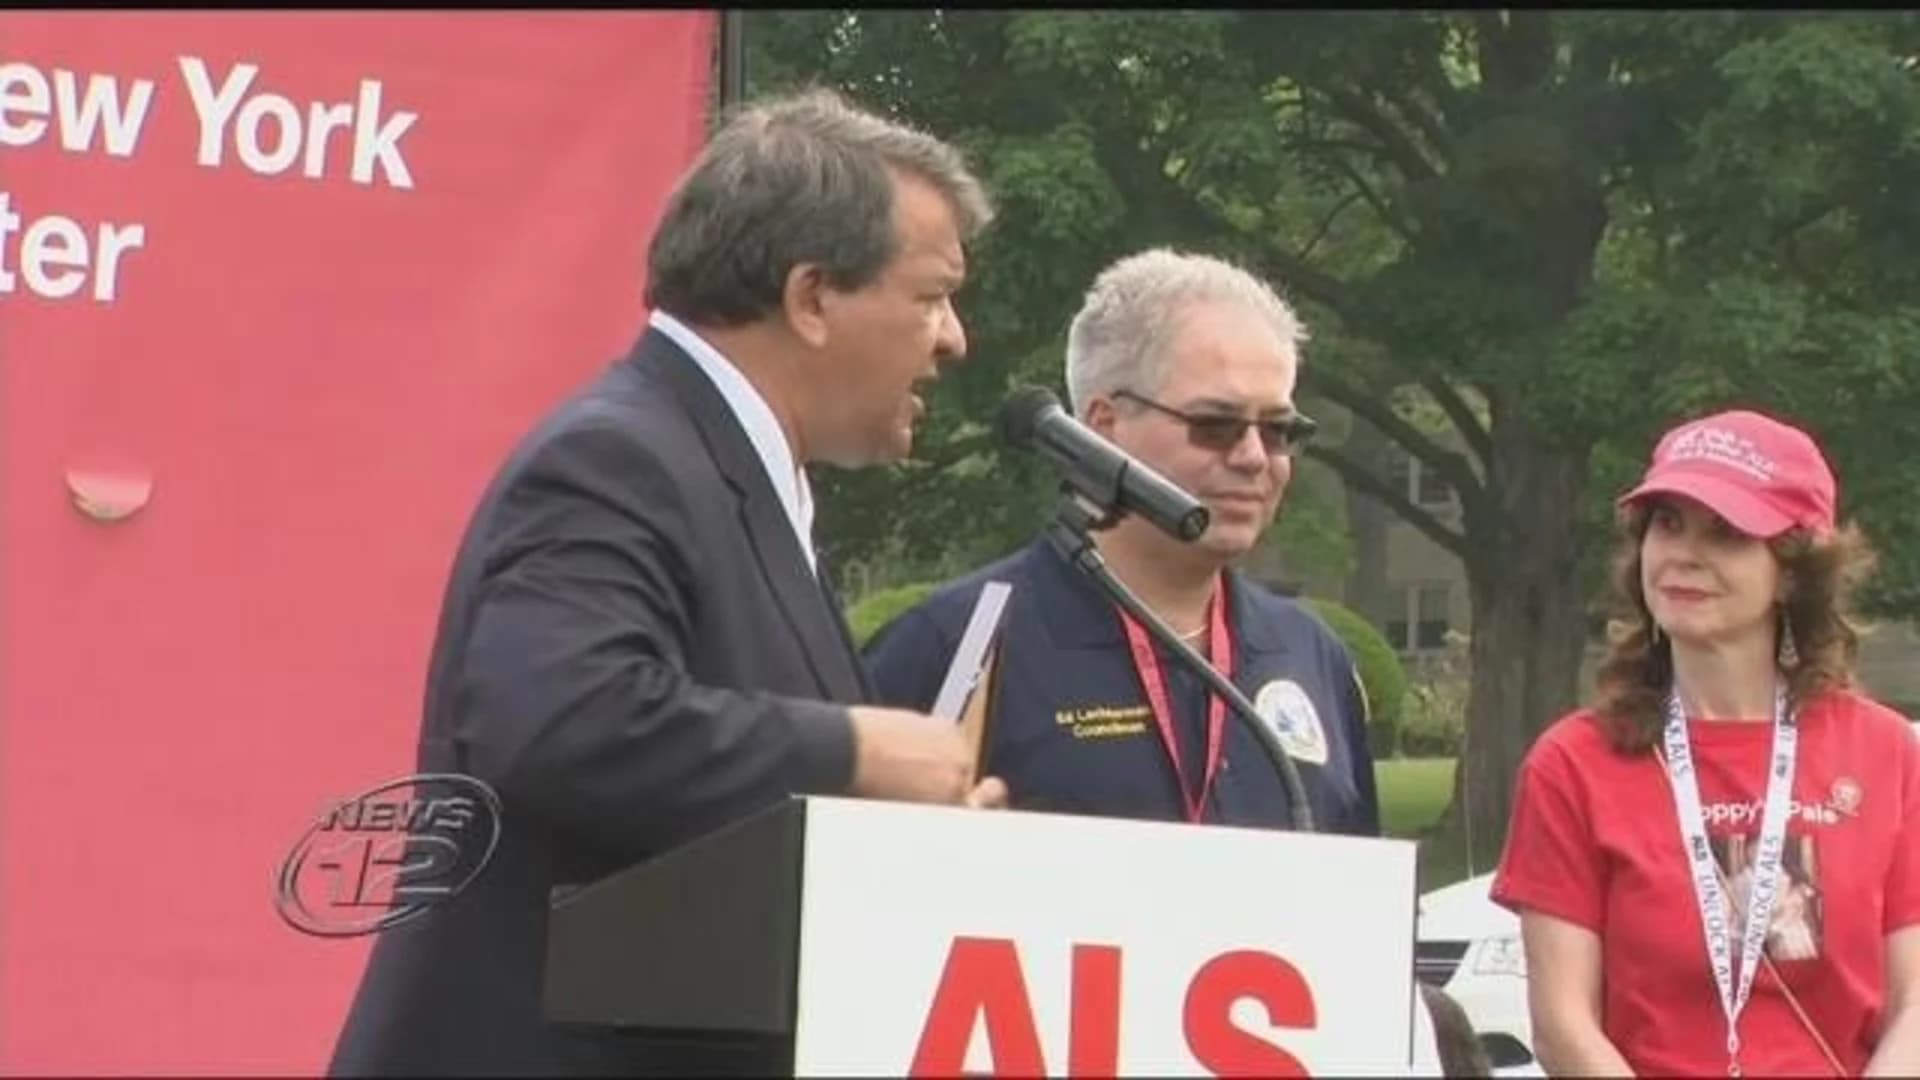 Westchester Walk to Defeat ALS held at Manhattanville College